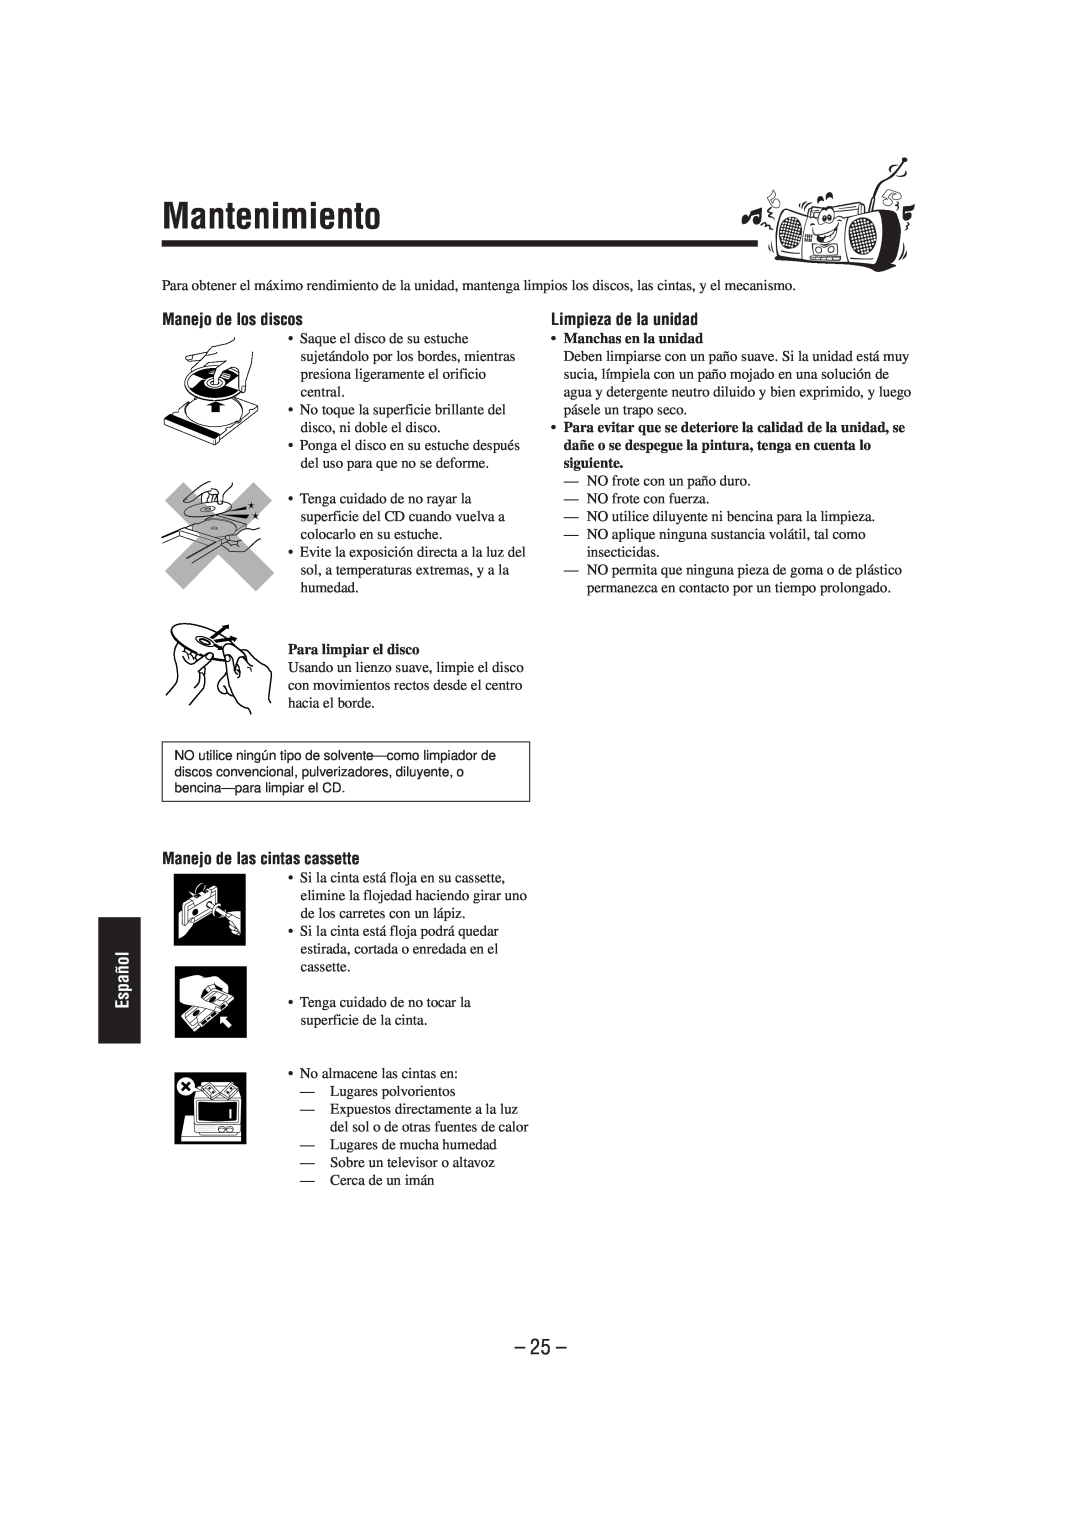 JVC CA-UXL40R manual Mantenimiento, Manejo de los discos, Limpieza de la unidad, Manejo de las cintas cassette, 25, Español 